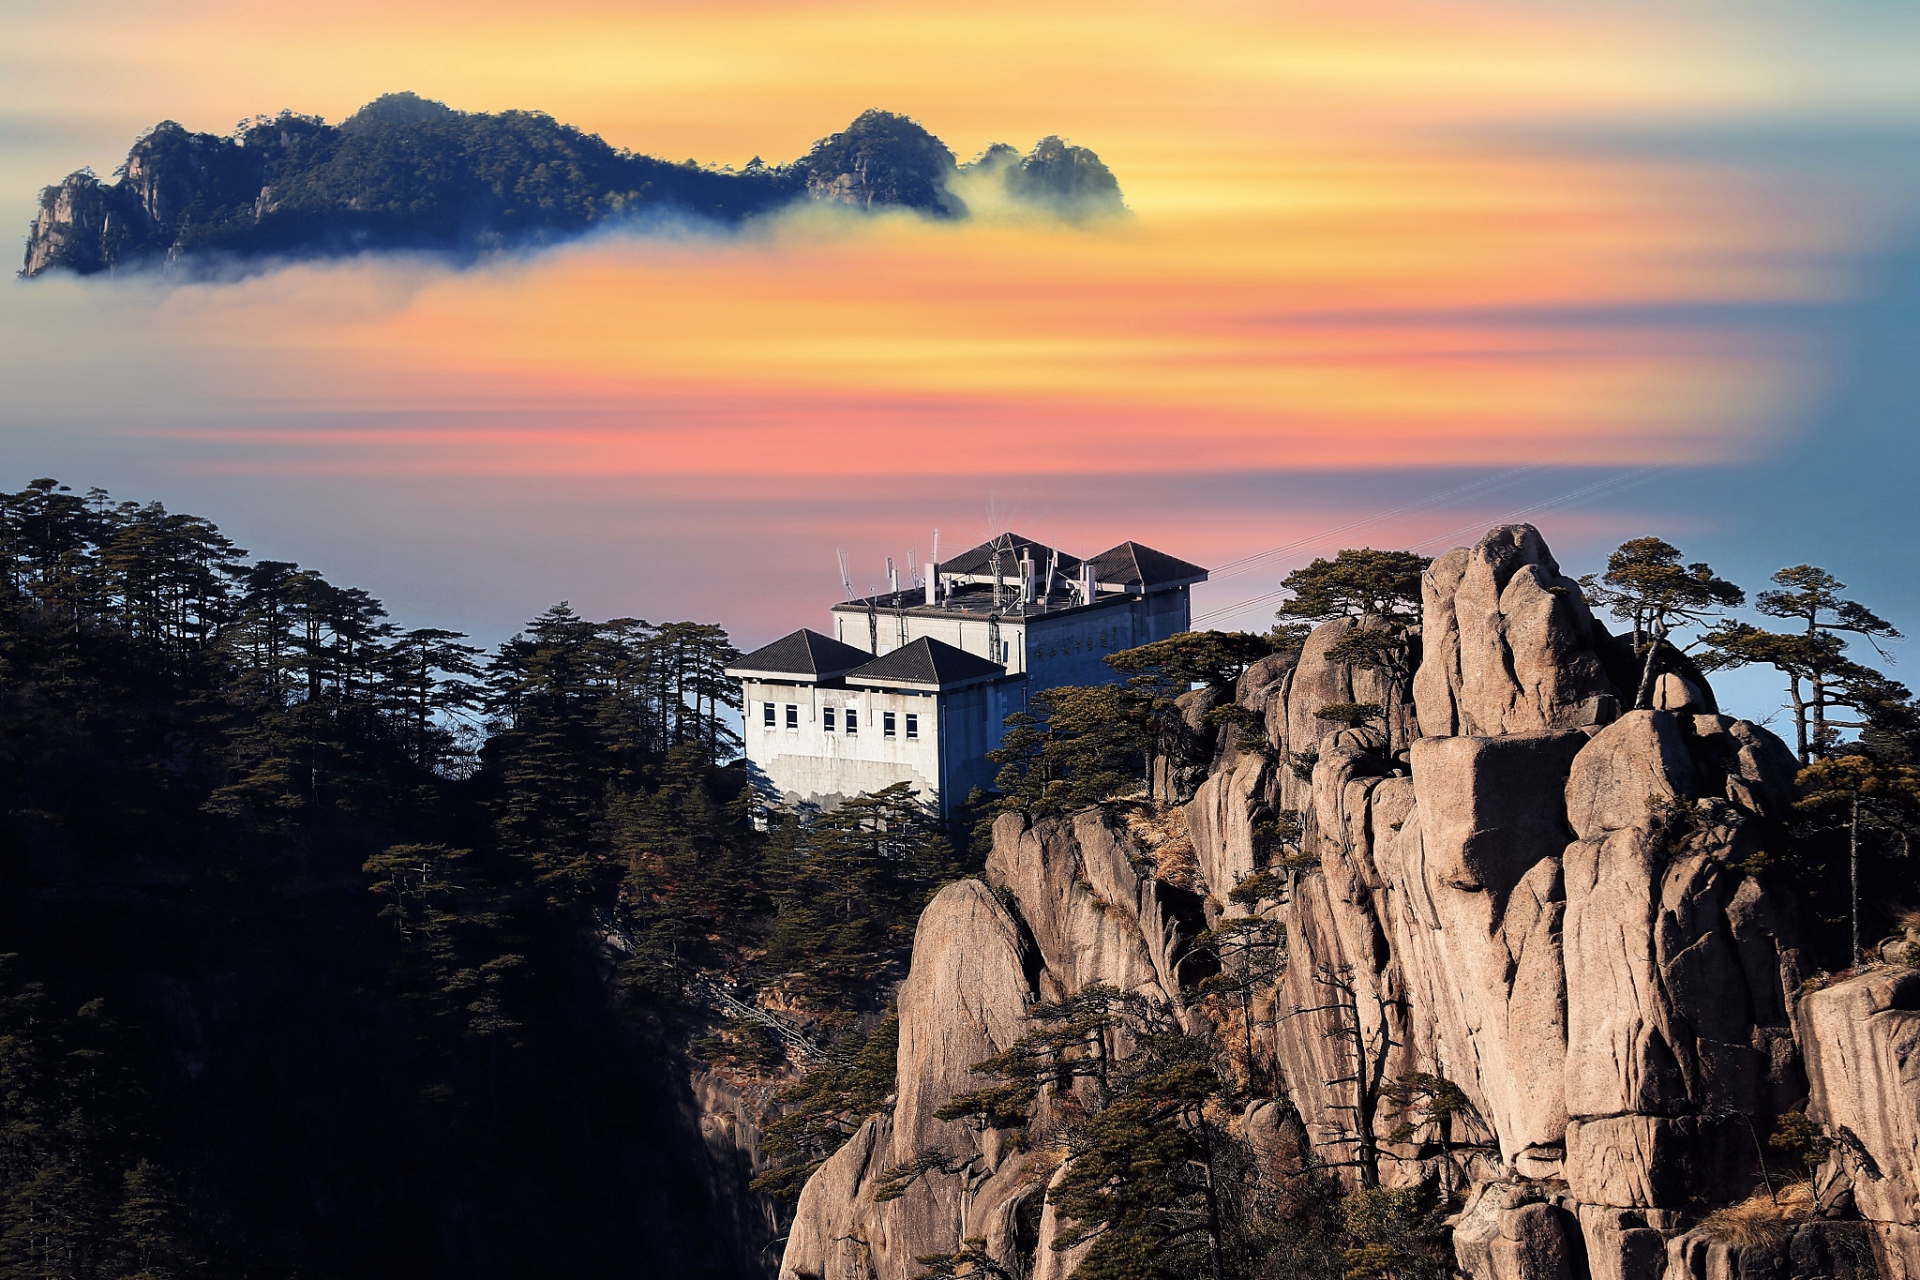 九华山,位于中国安徽省池州市的东南部,是一座充满神秘色彩和丰富文化